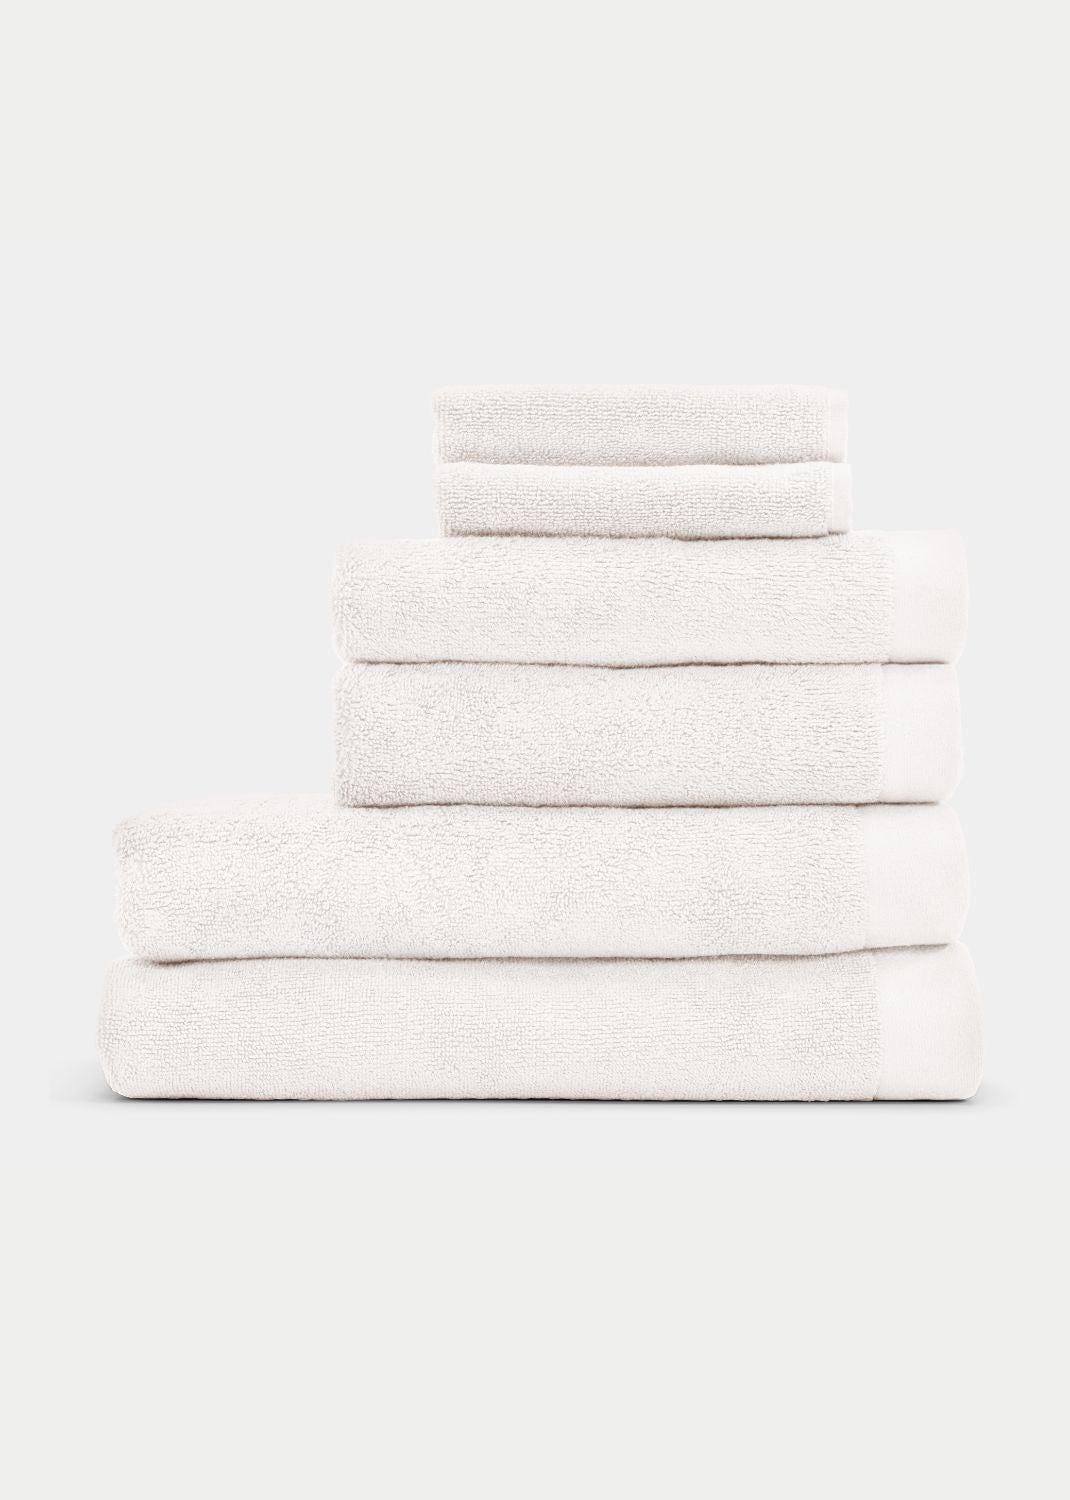 Handtuch Baumwolle Weiß 70 x 130 cm